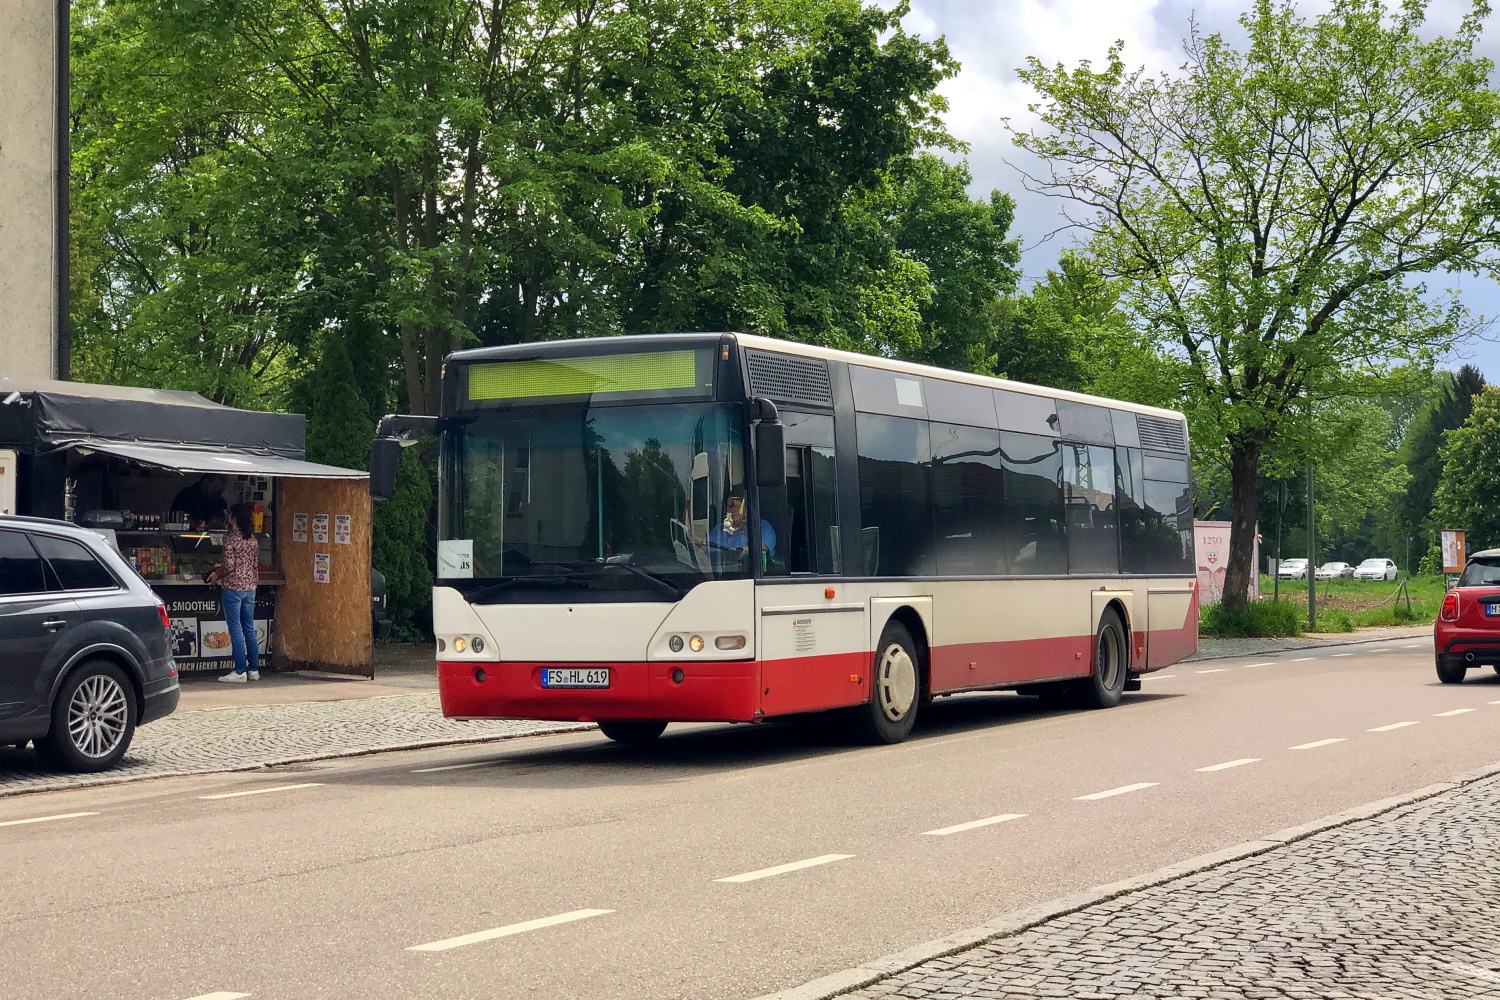 Freising, Neoplan N4411 Centroliner # FS-HL 619